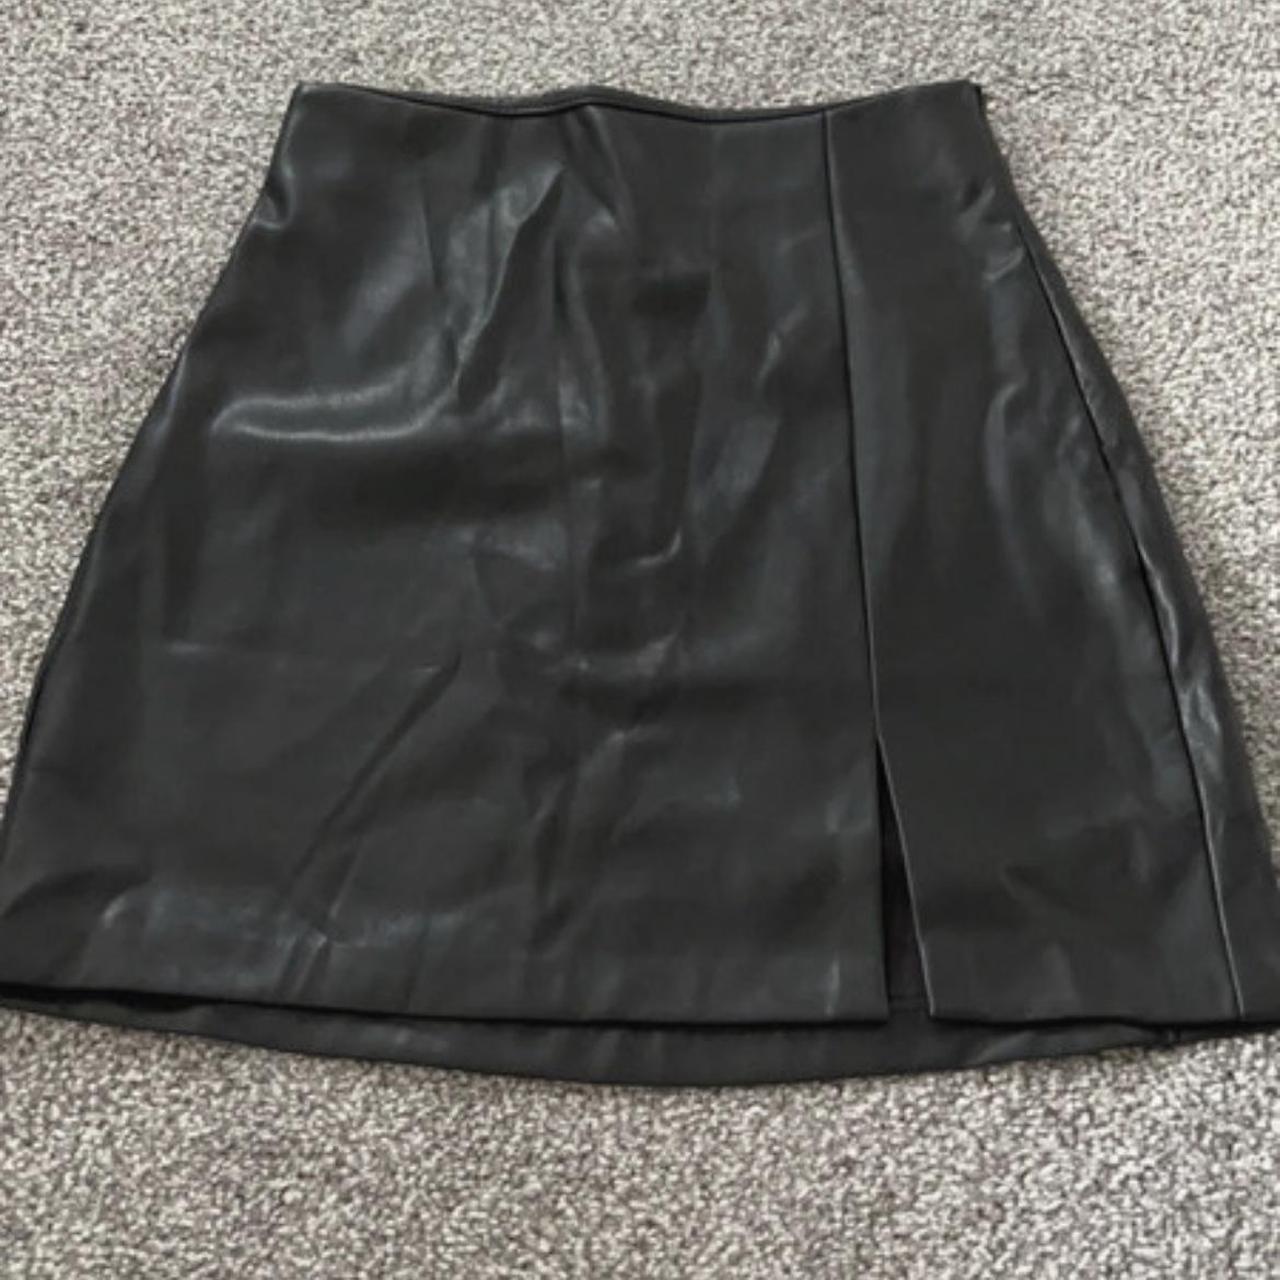 Pull&Bear leather mini skirt with split - never... - Depop